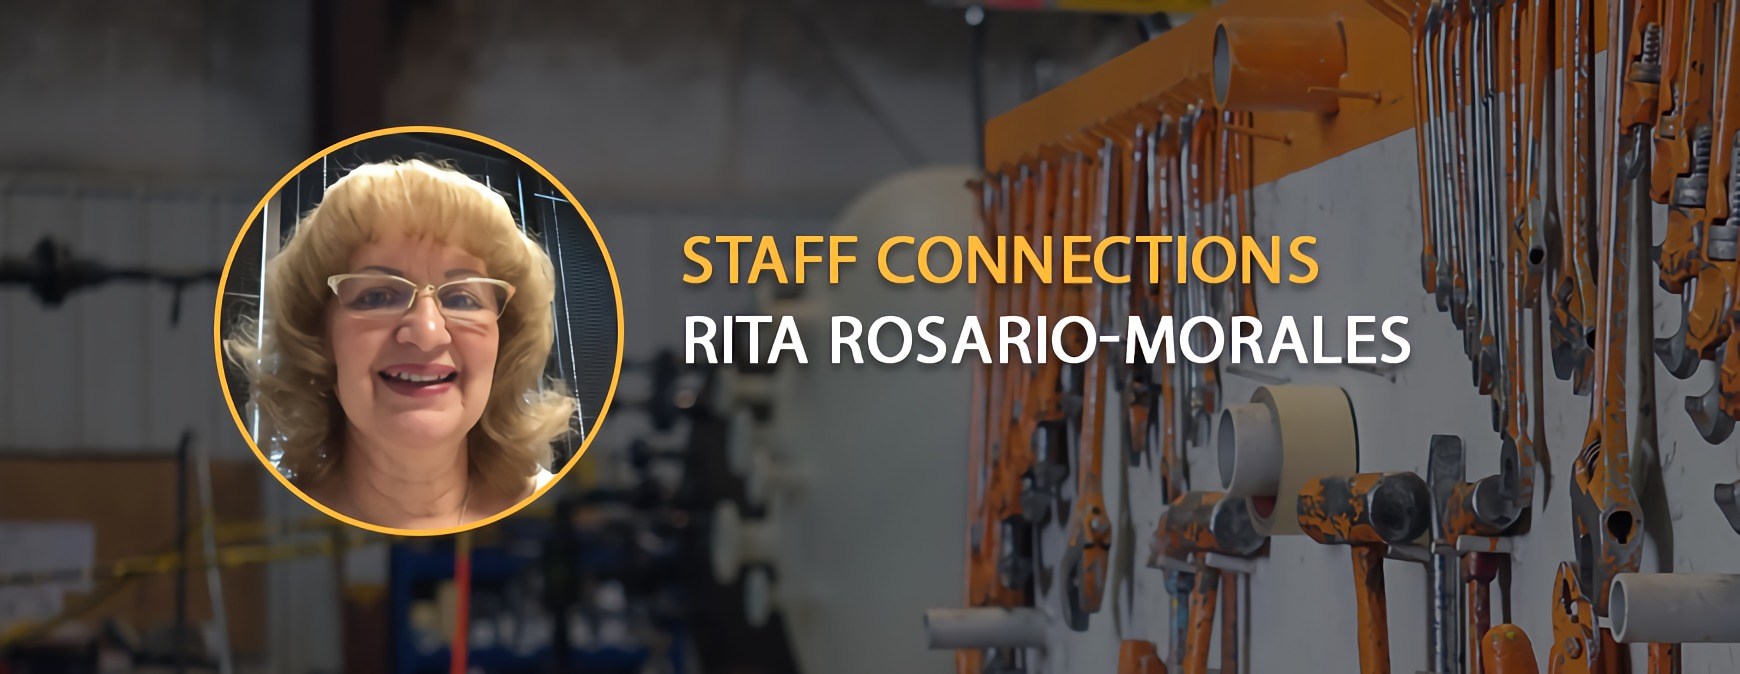 Rita Rosario-Morales Staff Connection